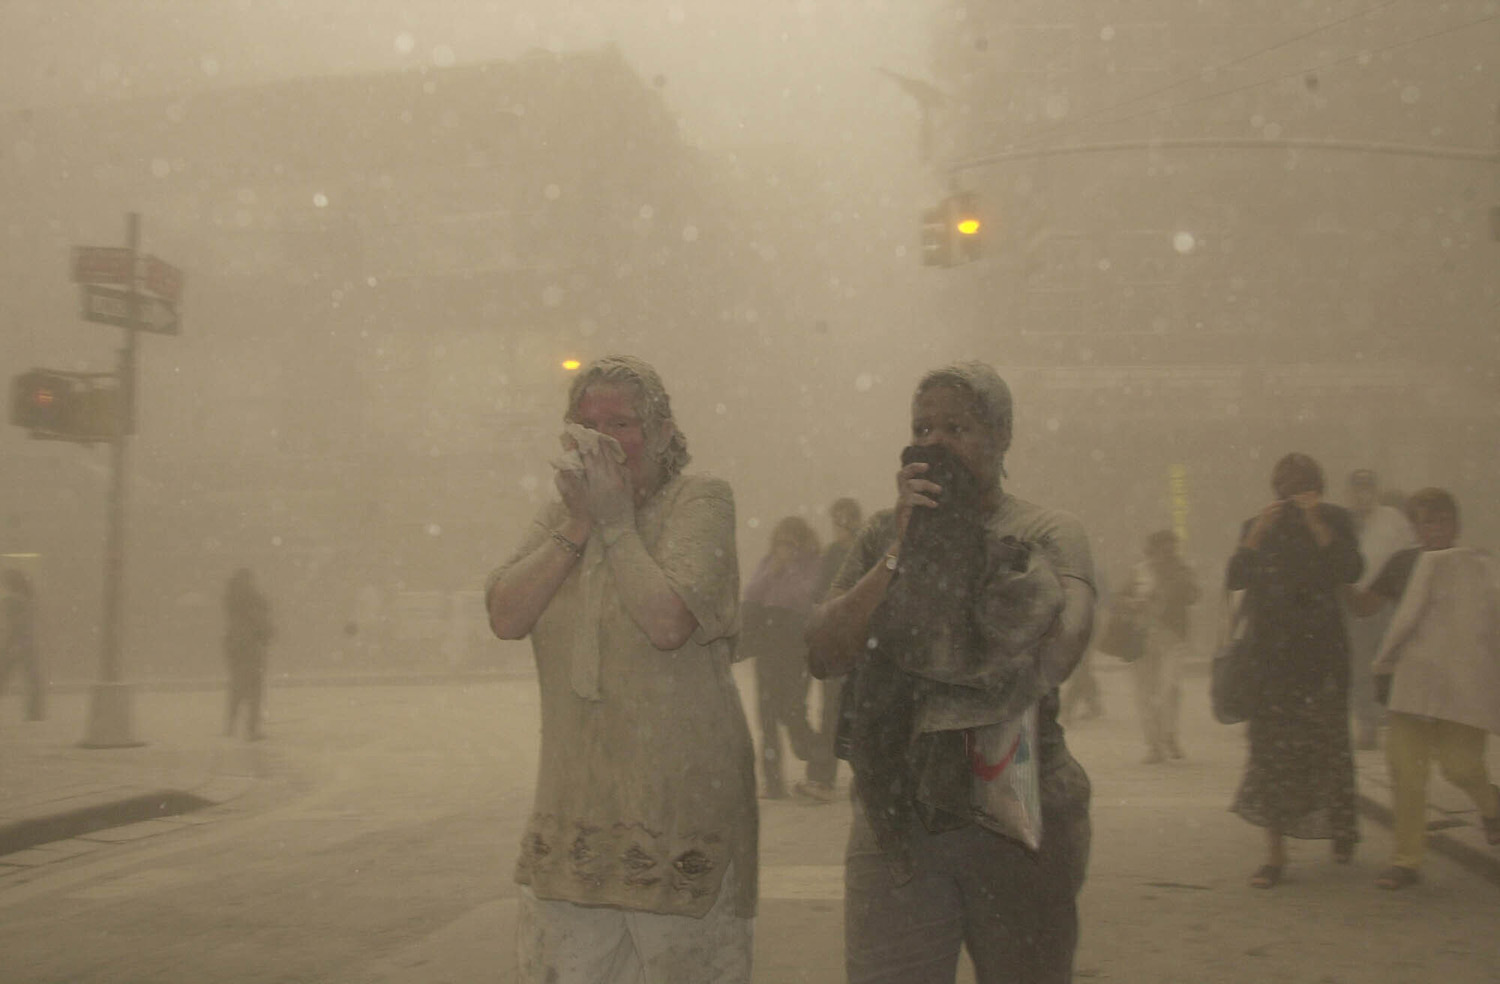 אבק מכסה את מנהטן לאחר הפיגוע במגדלי התאומים. עובדי הניקיון סובלים ממחלות עד היום (צילום: AP Photo/Suzanne Plunkett)